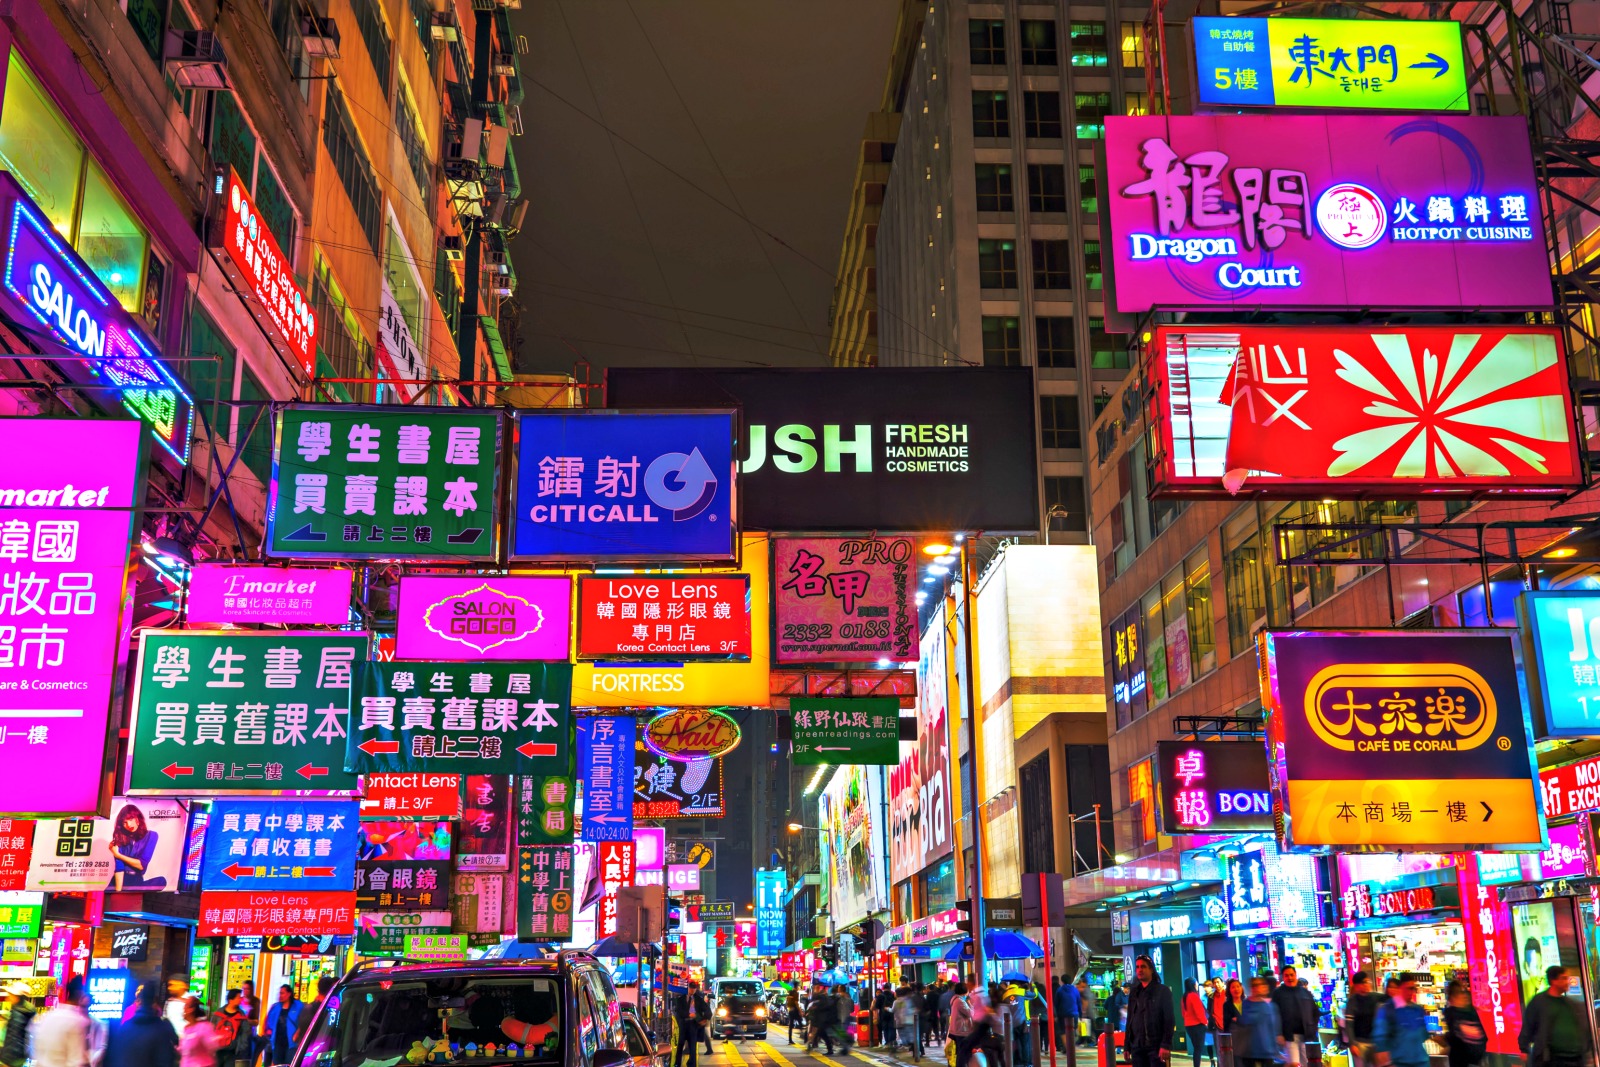 Du Lịch Châu Á: Mong Kok Gốc Phố Hồng Kông Thiên Đường Mua Sắm